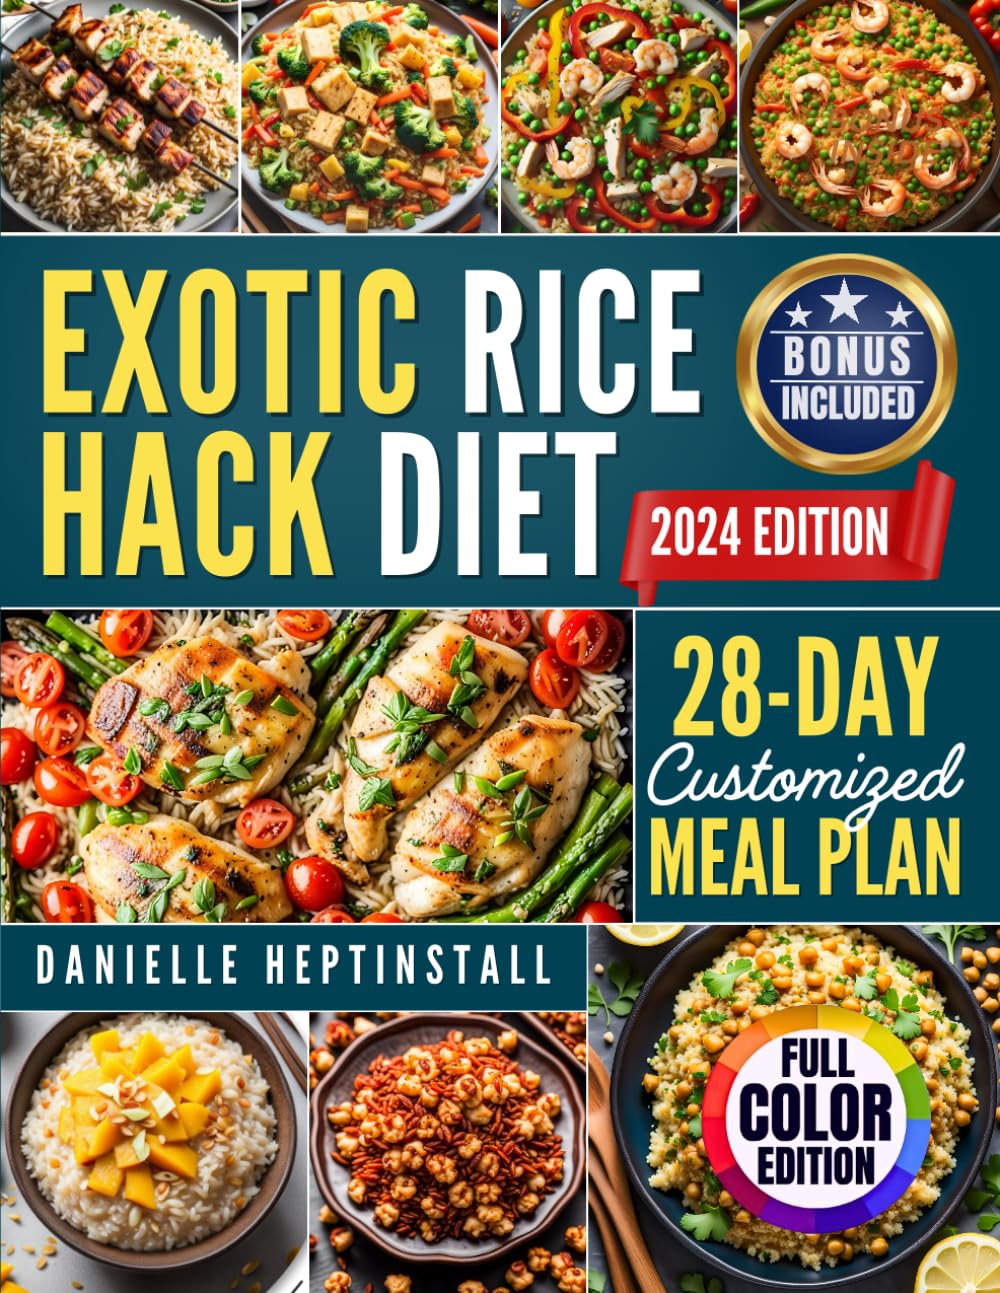 "Exotic Rice Hack Diet"